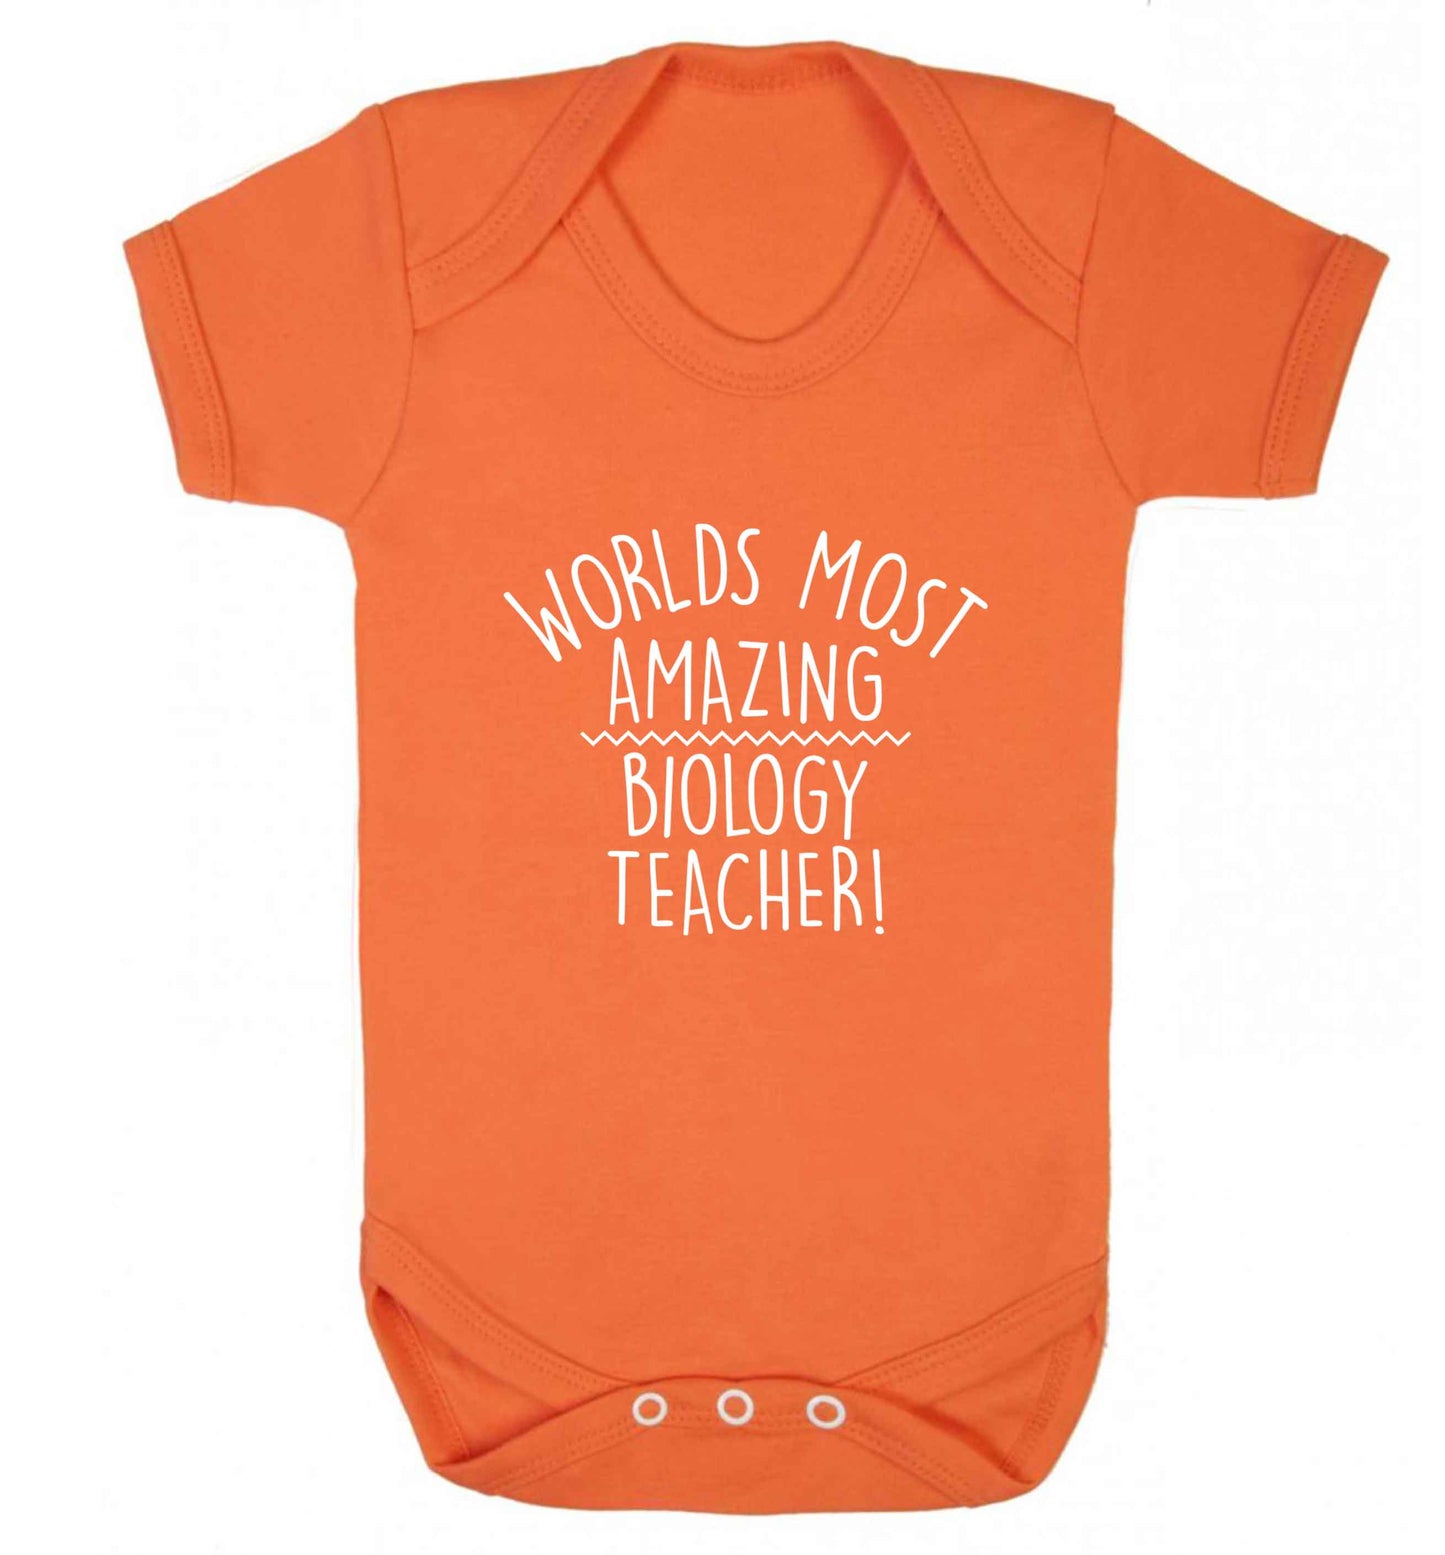 Worlds most amazing biology teacher baby vest orange 18-24 months